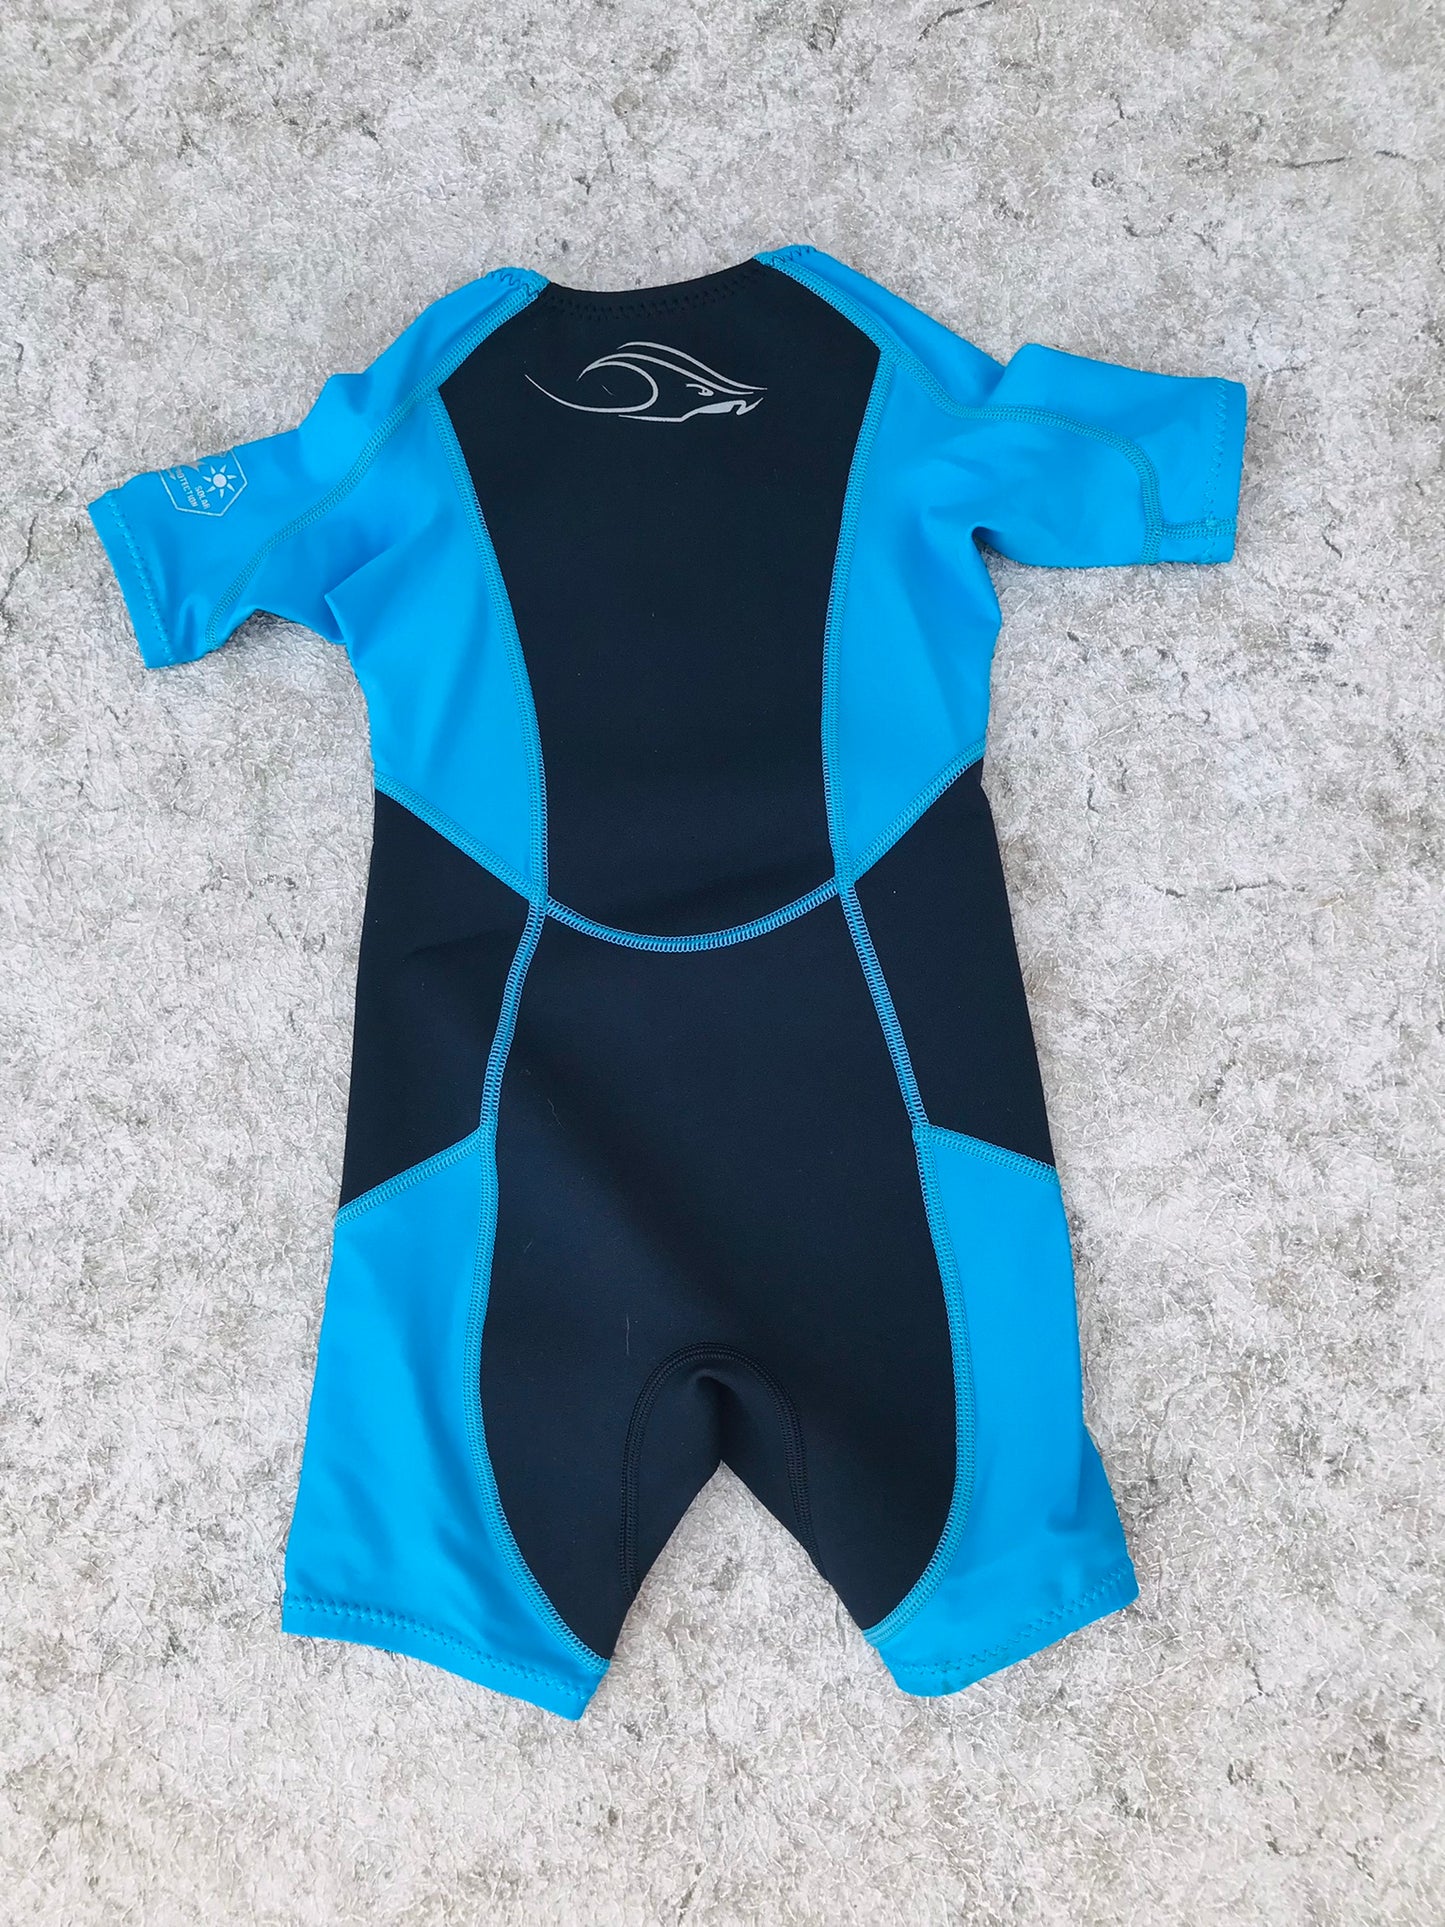 Wetsuit Child Size 4 StingRay AquaSphere 1-2 mm  Excellent